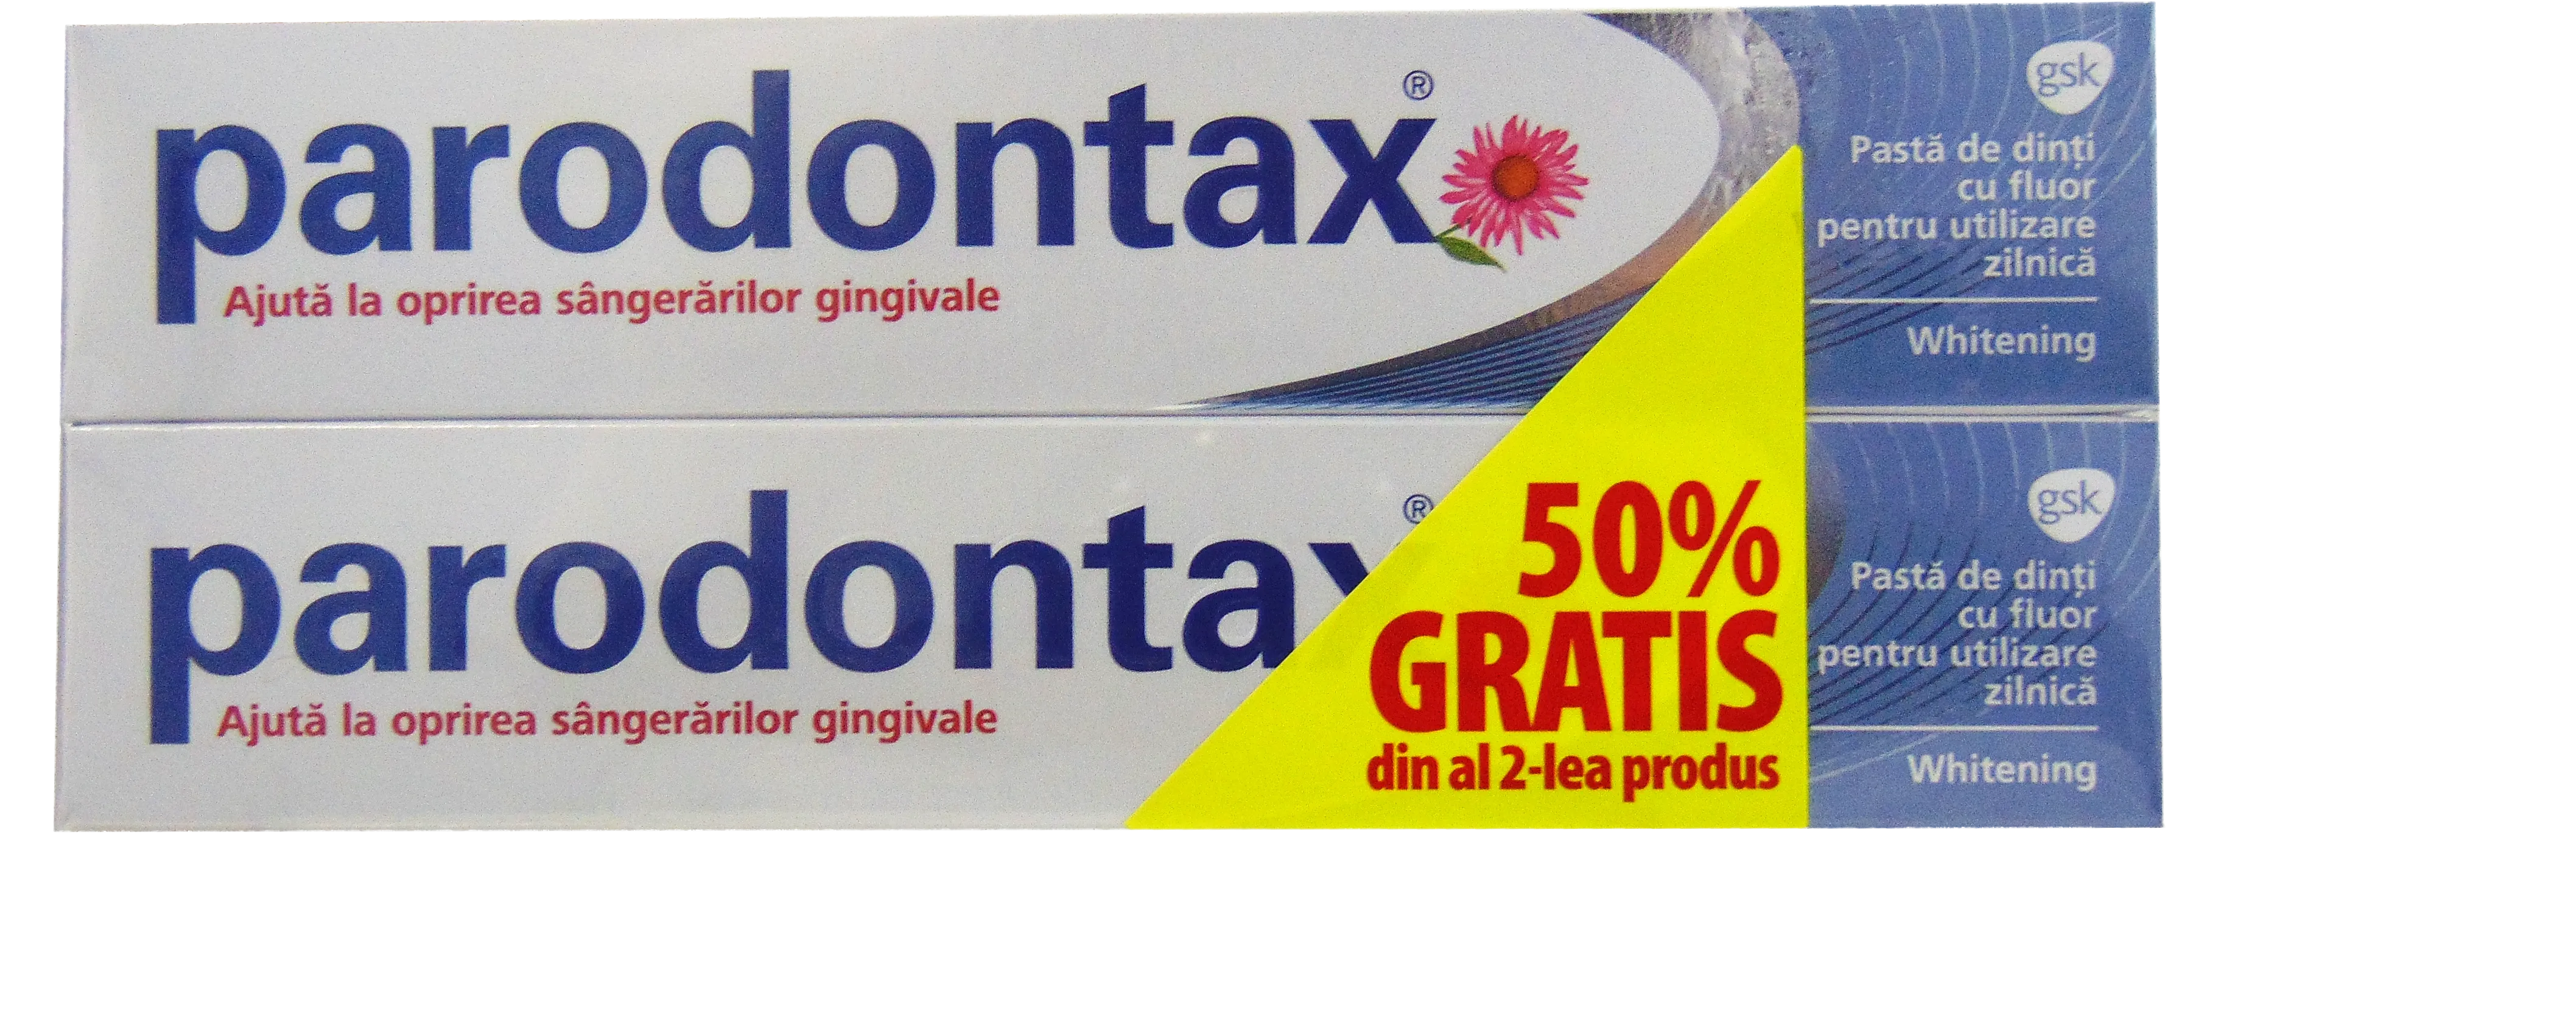 Paste de dinti - Parodontax Pachet promotional Pasta de dinti Whitening 2 bucati x 75ml, medik-on.ro